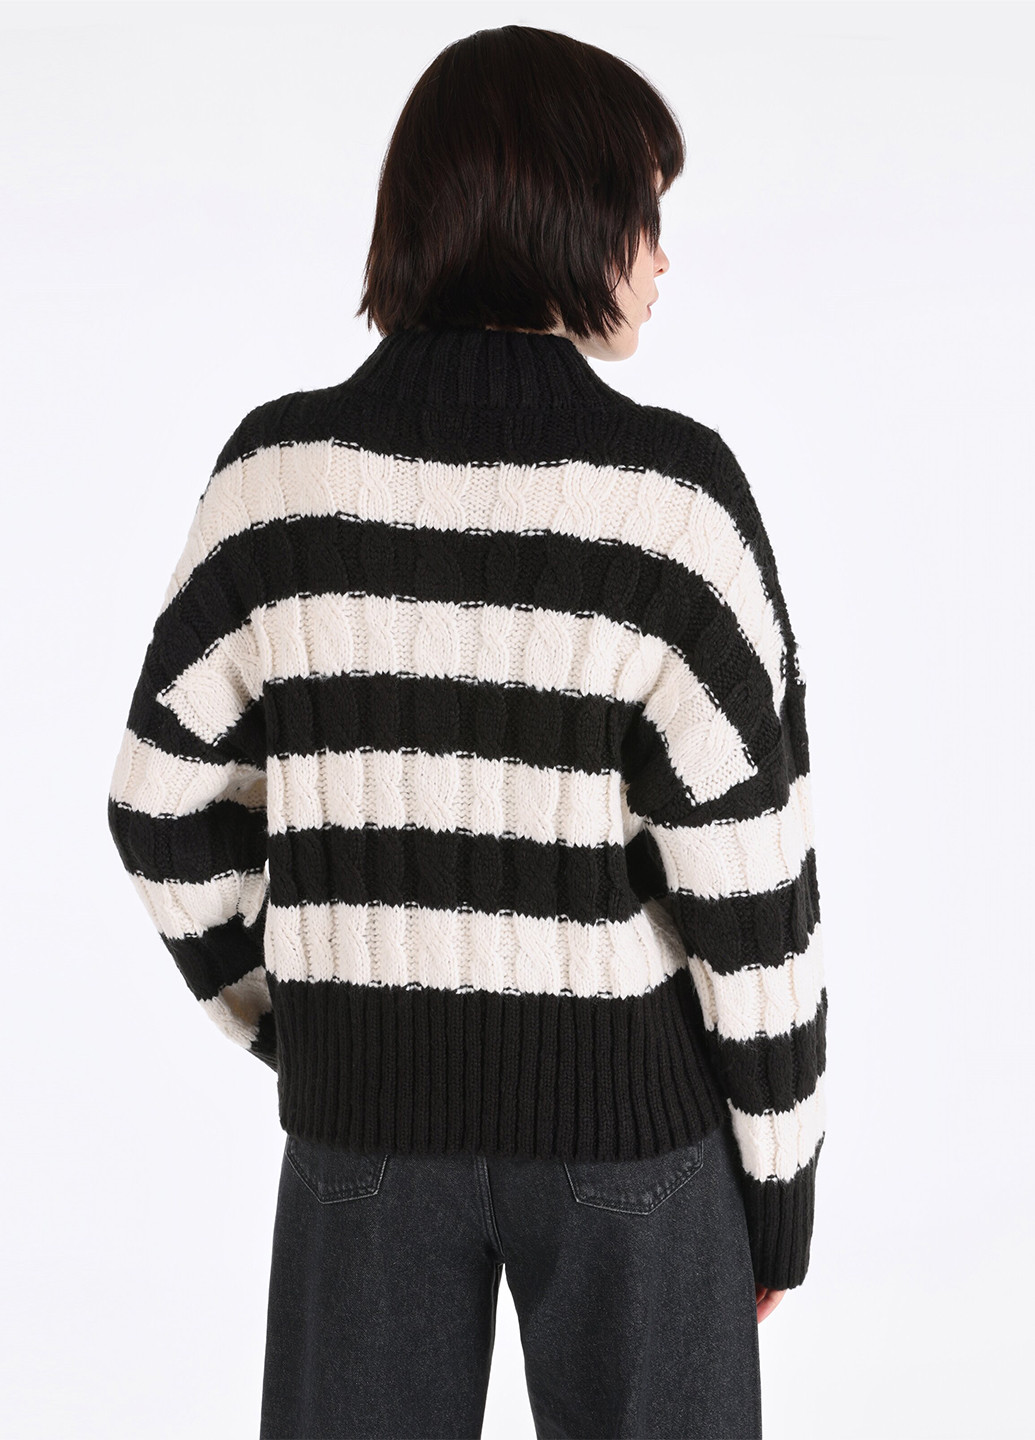 Чорно-білий зимовий светр Colin's